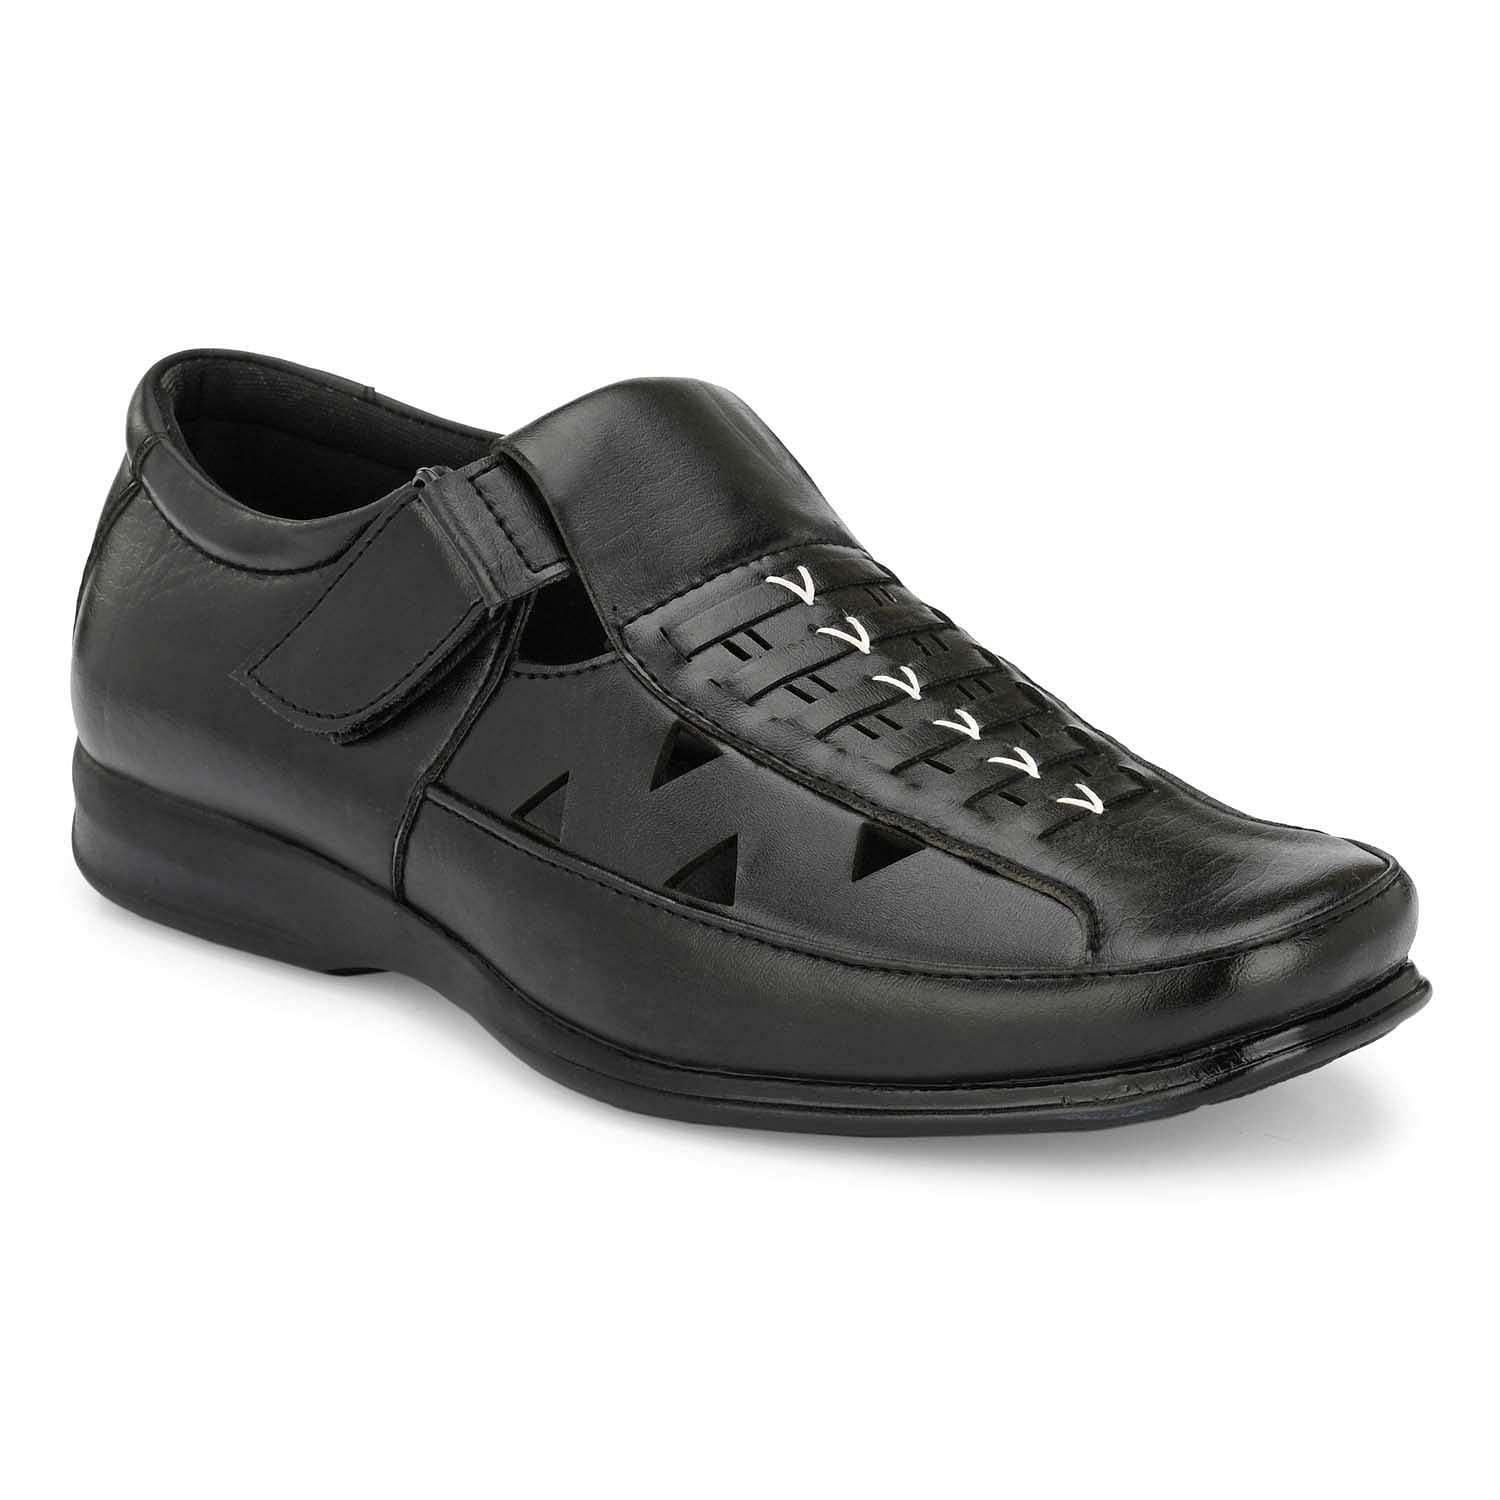 Pair-it Mn Sandals - Black-LZ-Roman-102